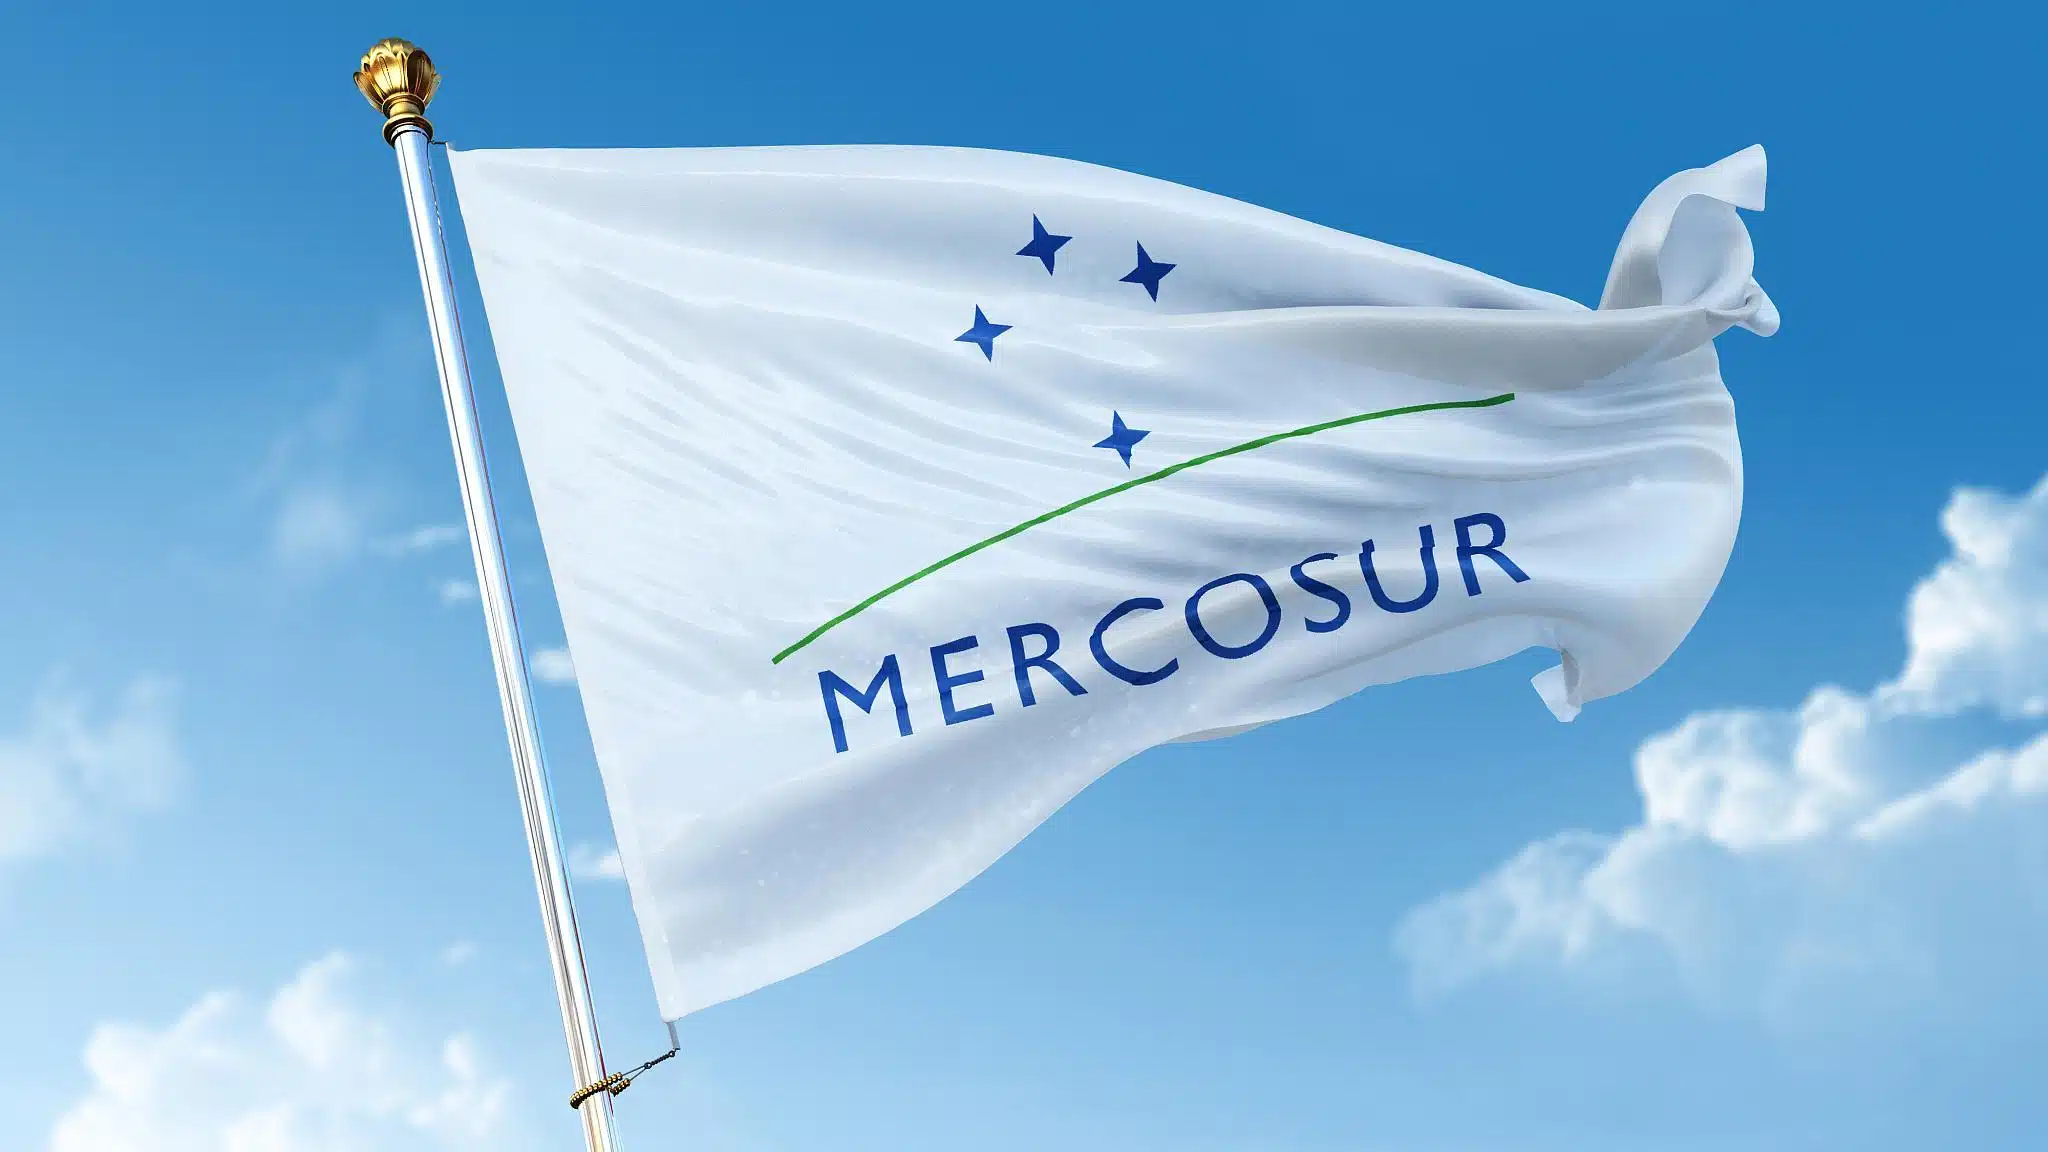 Cumbre del Mercosur se realizará el 6 y 7 de diciembre en Brasil